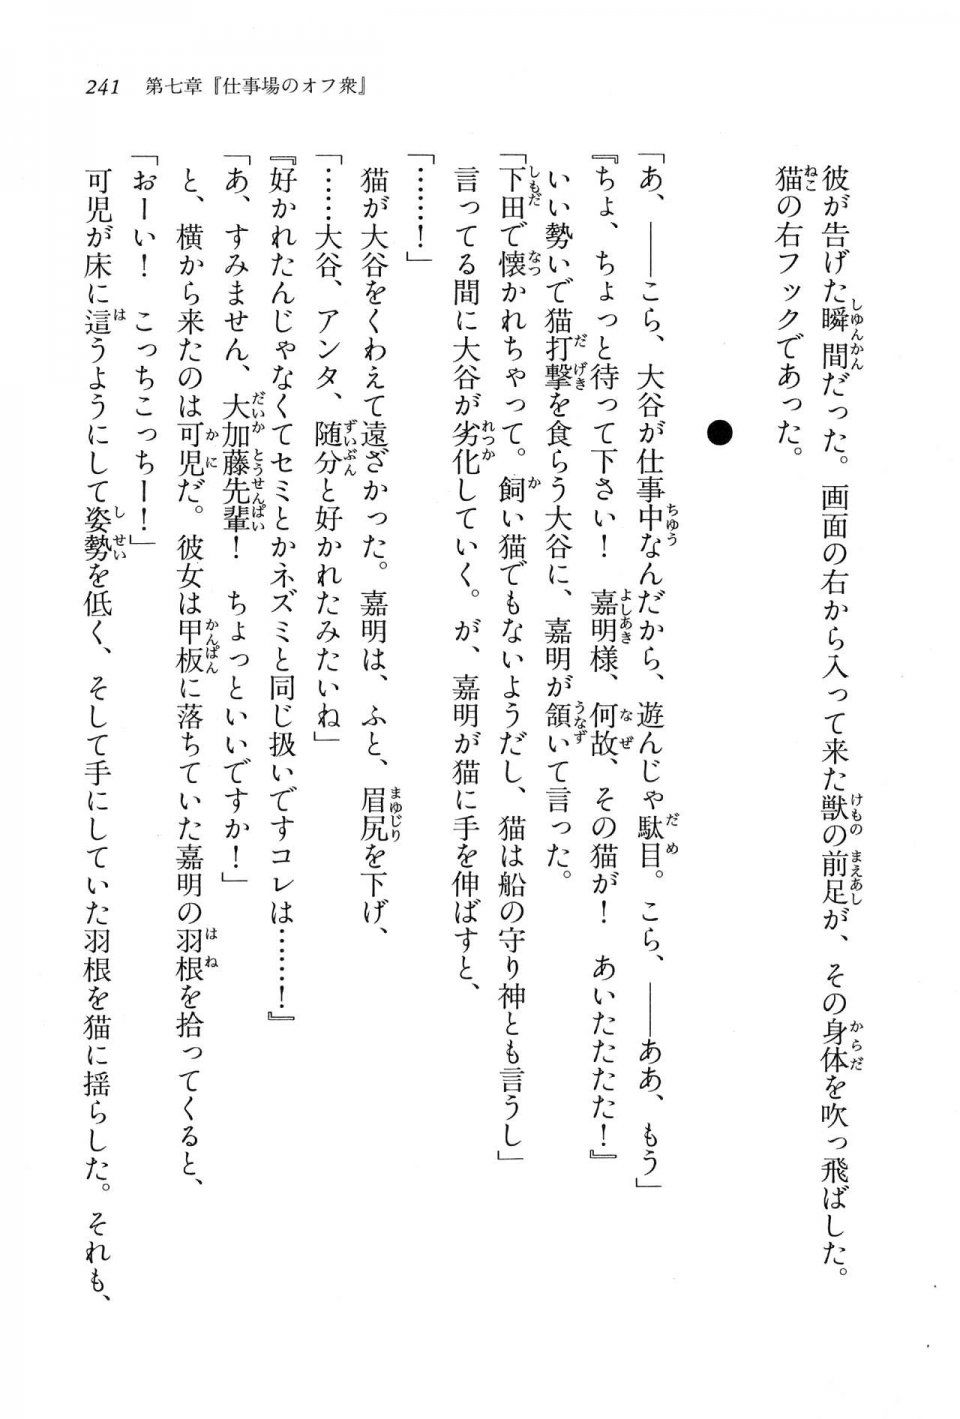 Kyoukai Senjou no Horizon LN Vol 16(7A) - Photo #241